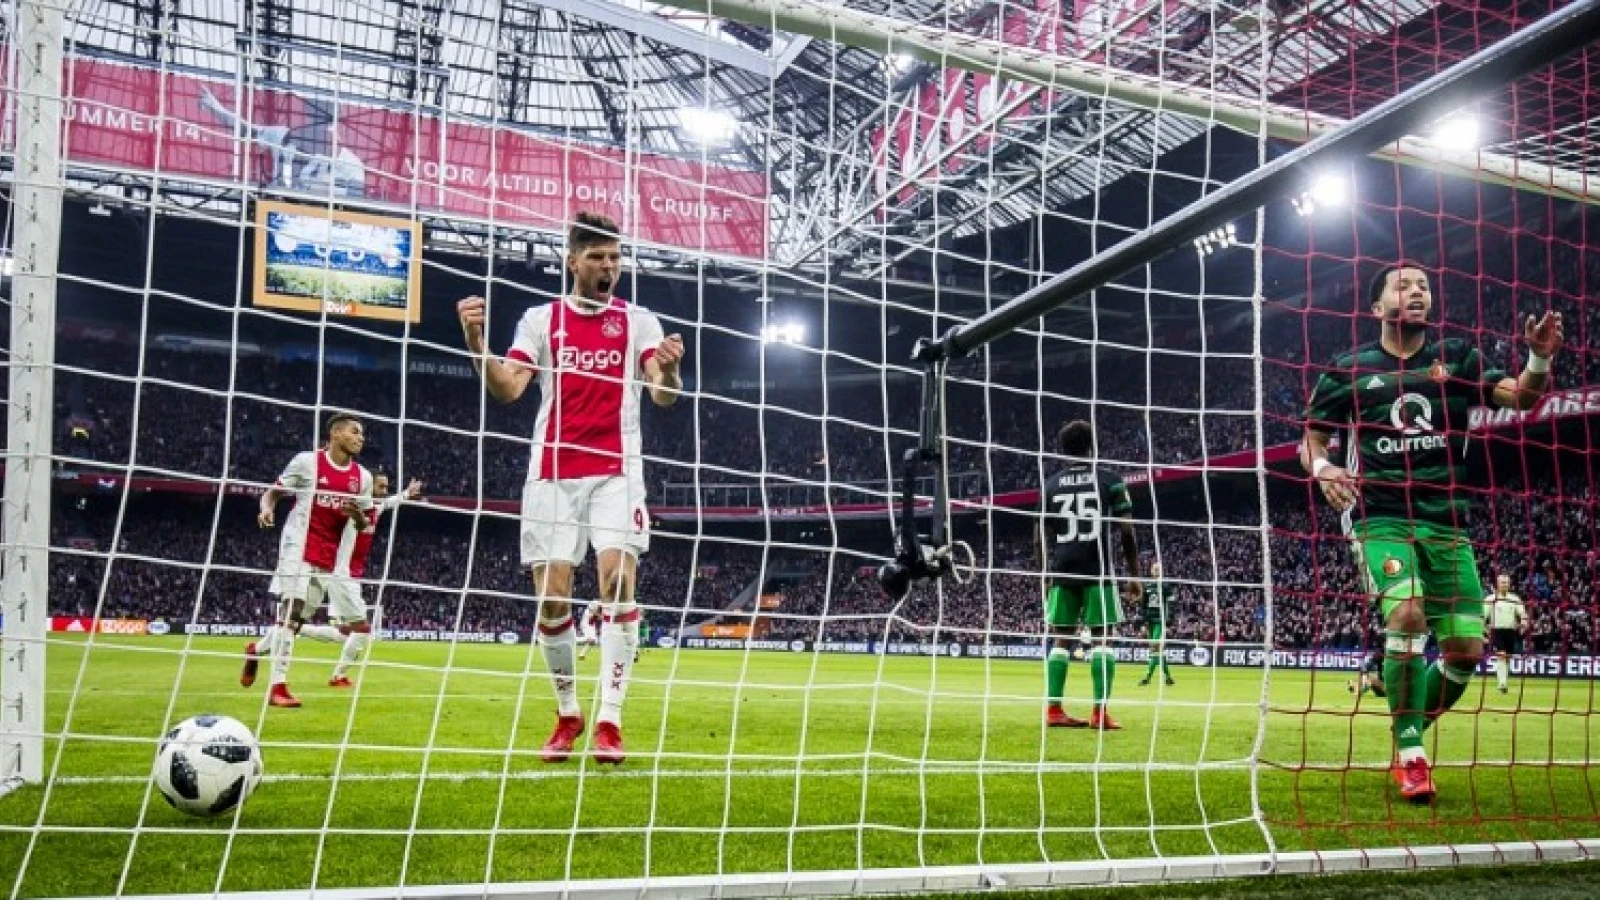 Nederlaag in Amsterdam niet erg: 'Je laat het dus niet liggen tegen Ajax en al helemaal zelden tegen PSV'